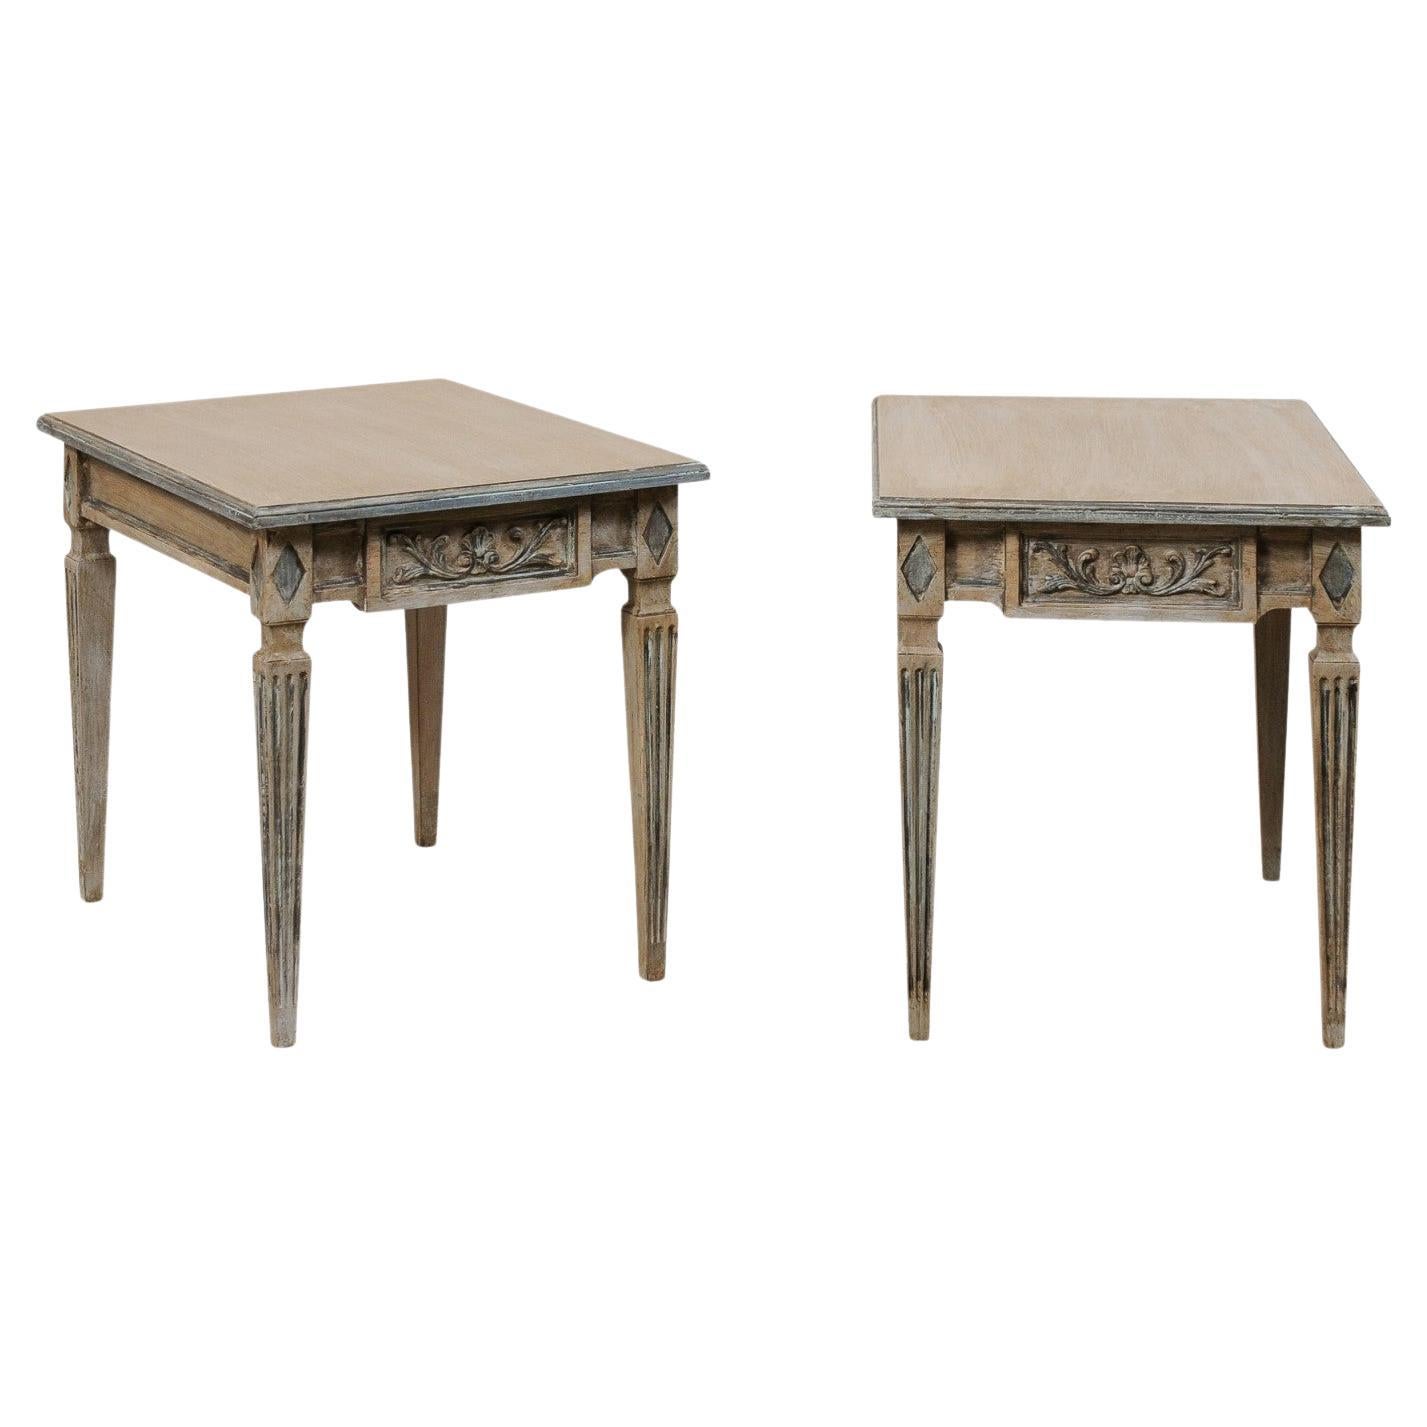 Paire de tables d'appoint italiennes joliment sculptées et peintes, reposant sur des pieds cannelés carrés en vente